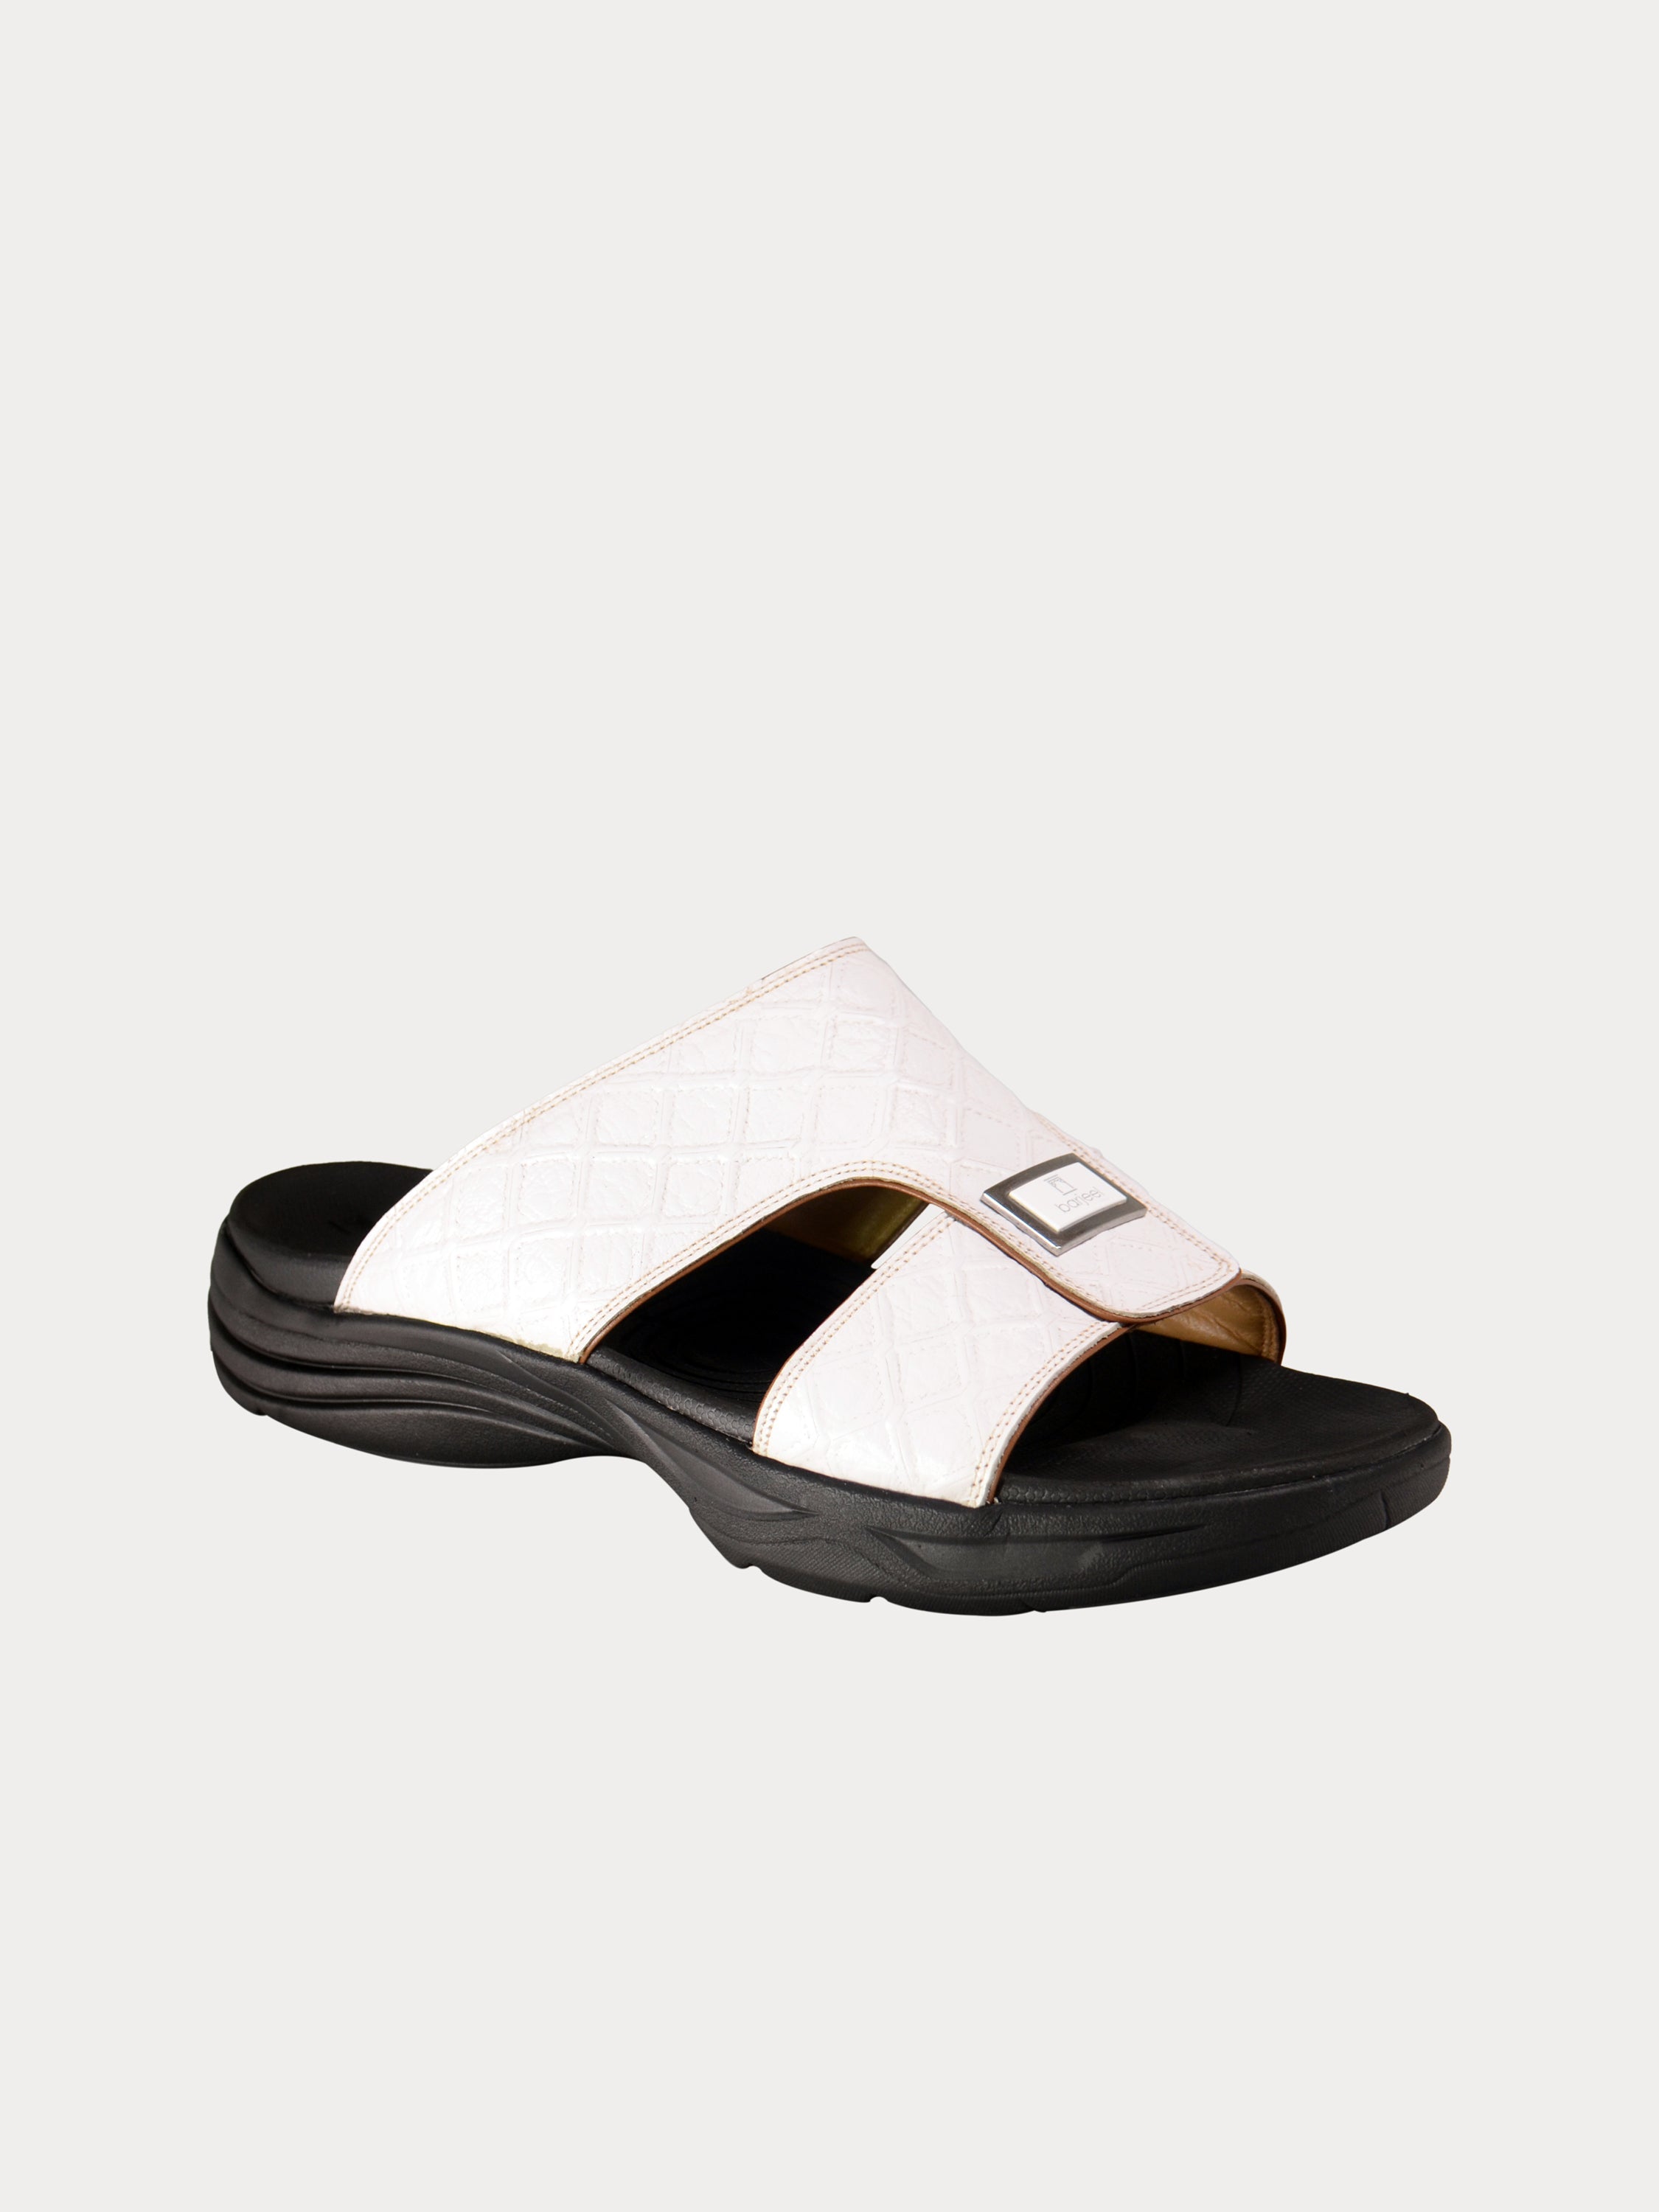 Barjeel Uno D197154 Men's Arabic Leather Sandals #color_White